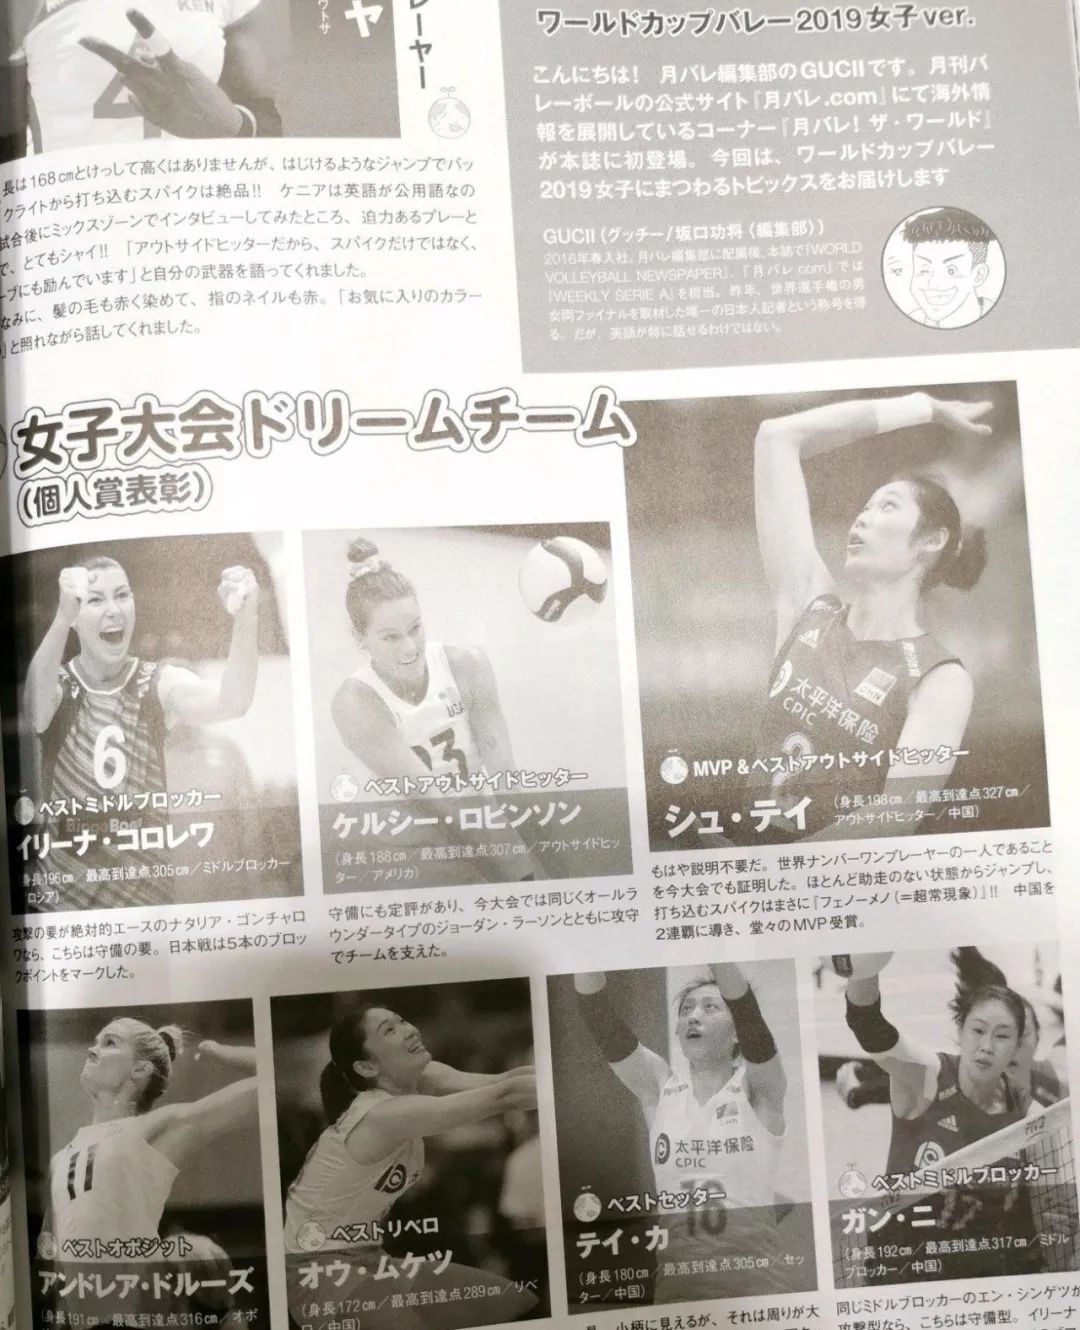 征服对手 日本排球杂志重点报道朱婷 他们用四个字形容女排巨星 情感琐事 微信公众号文章阅读 Wemp